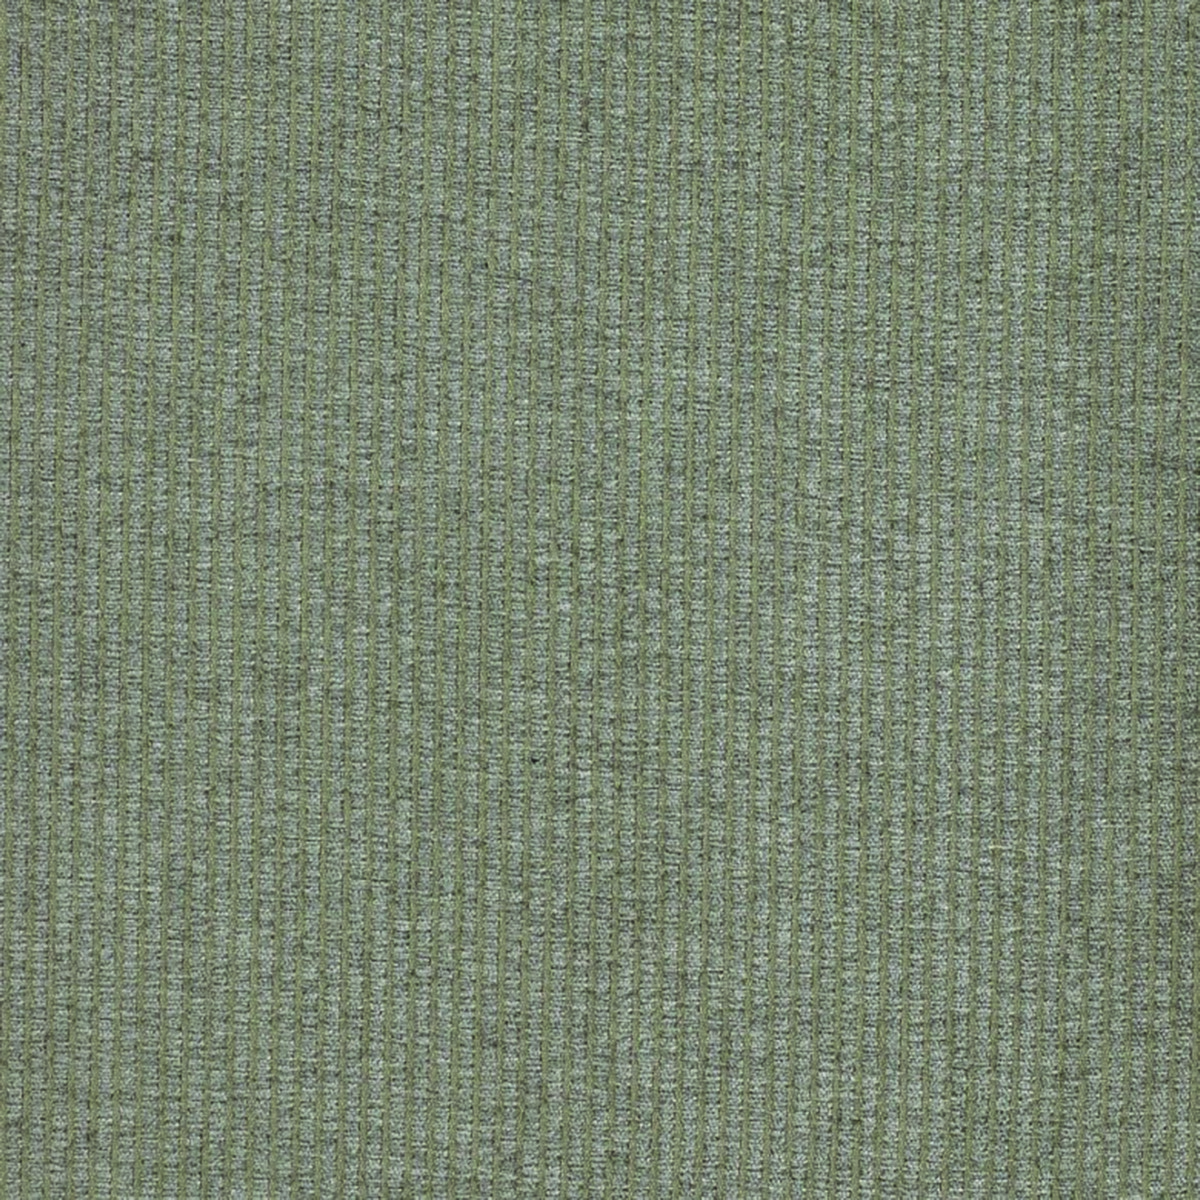 Sparrow Linen Fabric by Jones